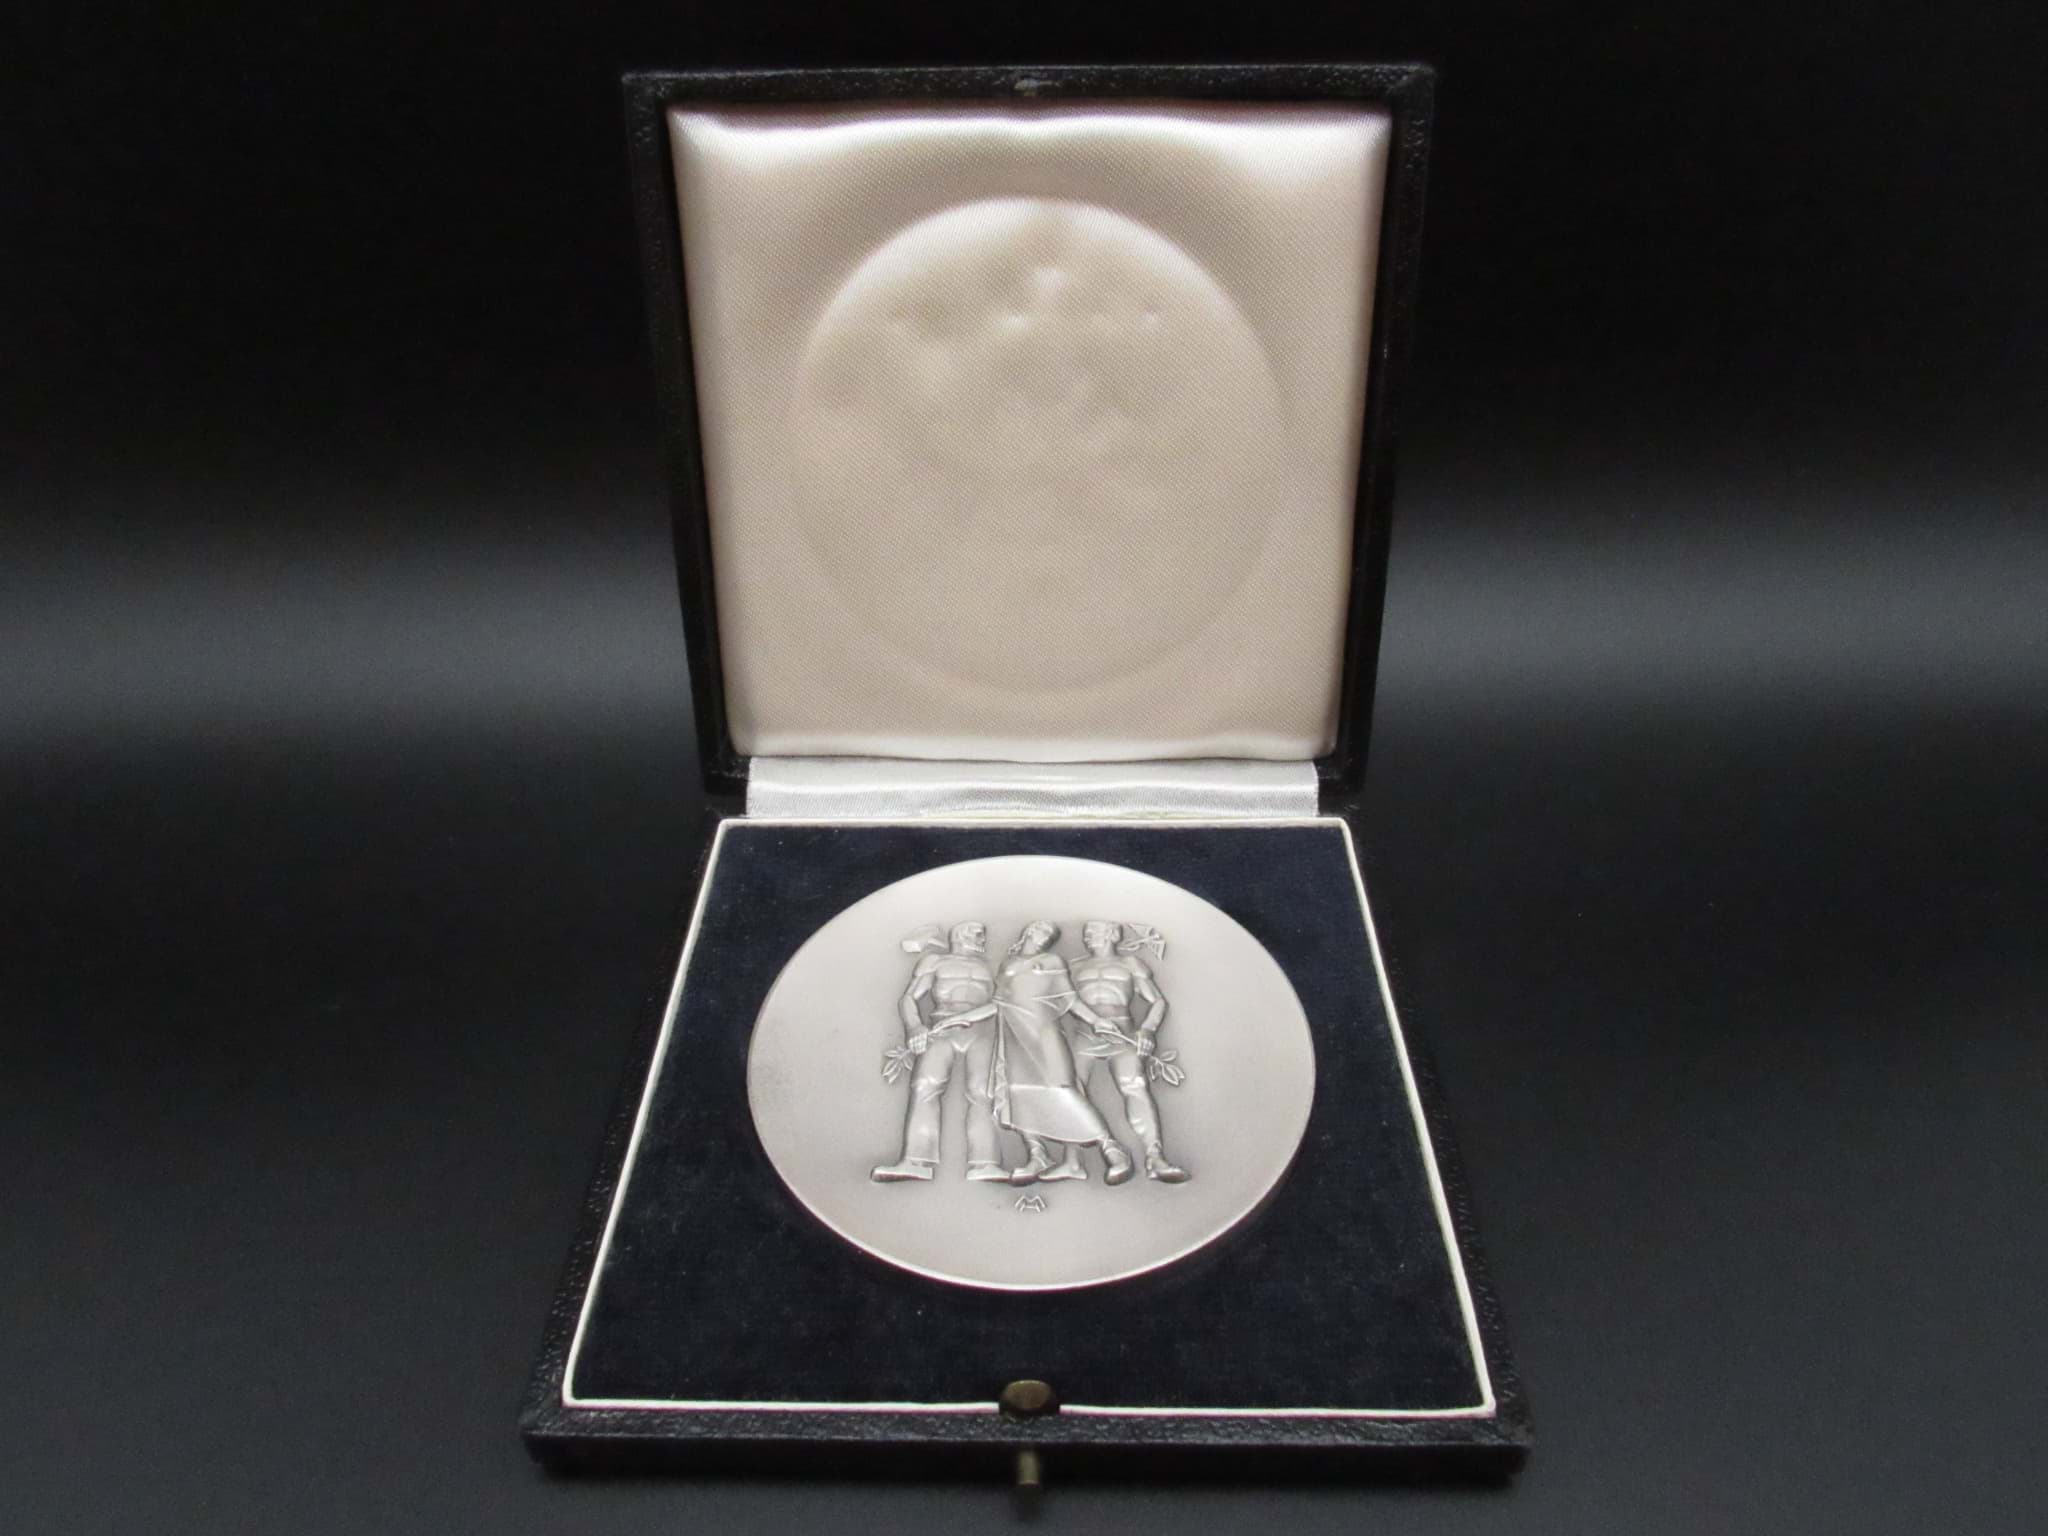 Picture of Wirtschafts-Medaille mit Etui-Schachtel, für langjährige Mitarbeit, Silberauszeichnung